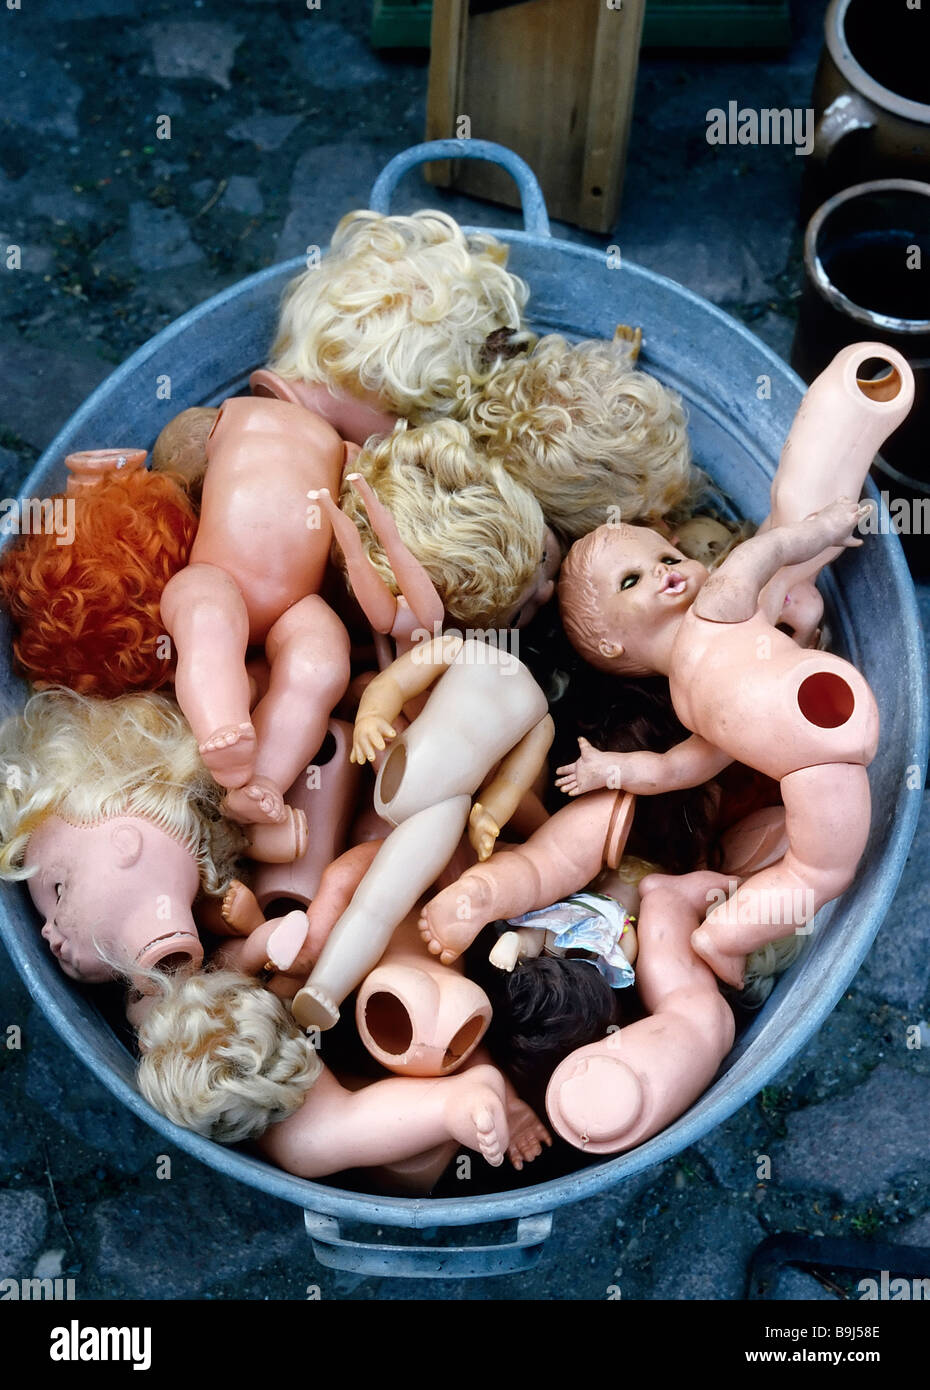 Muñecas rotas en una bañera de zinc, un mercadillo en el río Elba, Dresde, Sajonia, Alemania, Europa Foto de stock